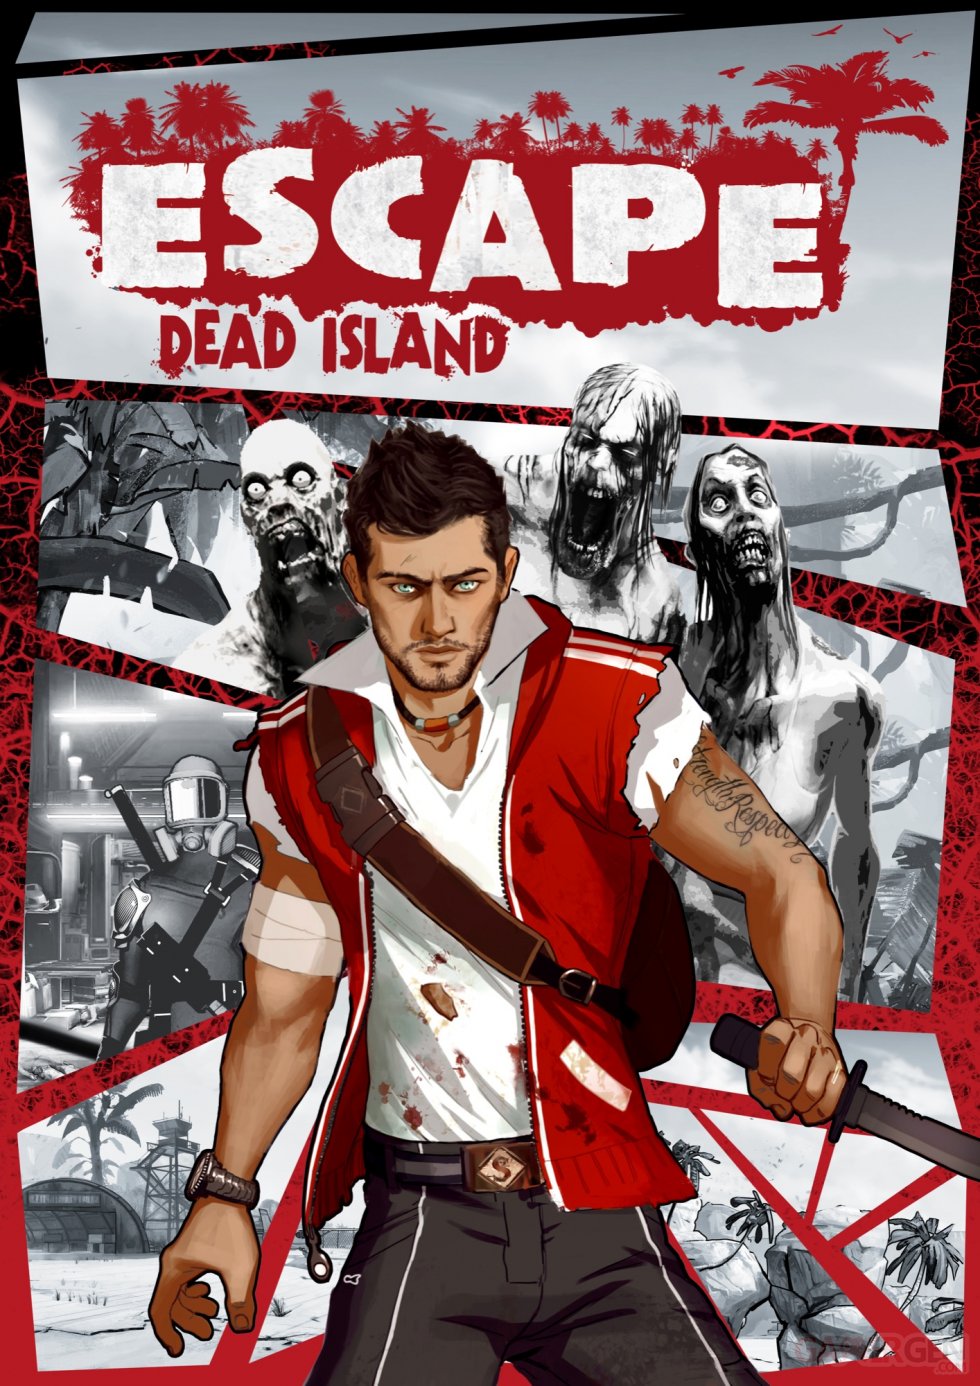 ESCAPE Dead Island images screenshots 7